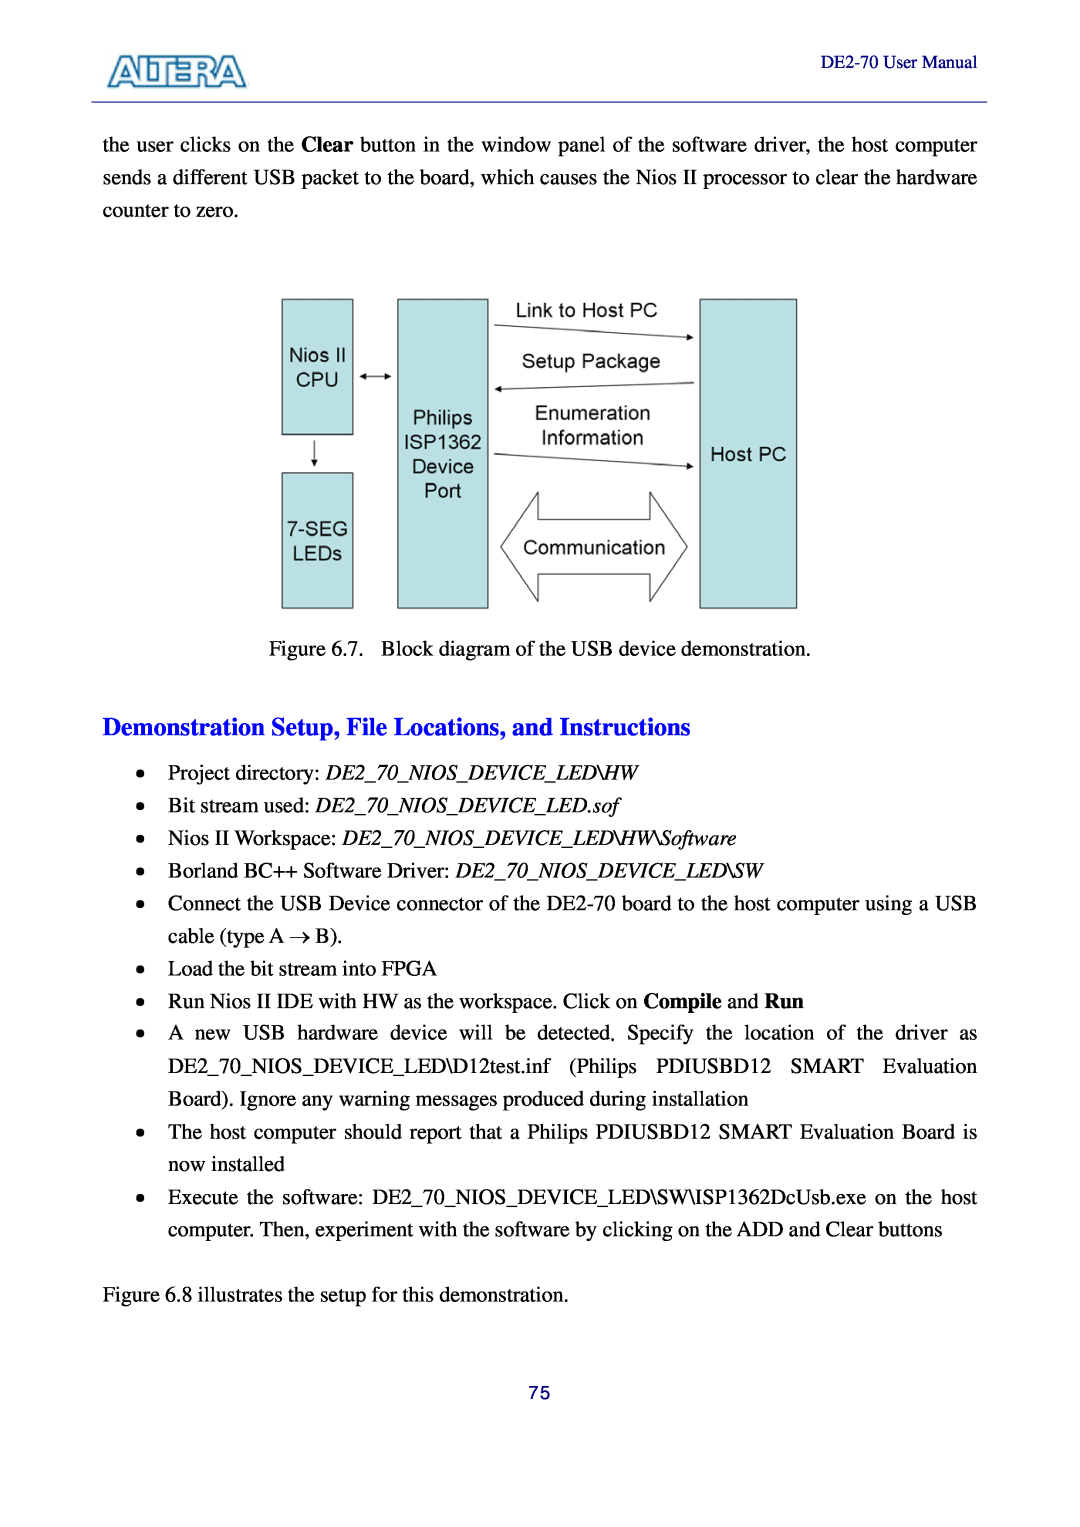 Sigma DE2-70 manual Project directory DE270NIOSDEVICELED\HW, Bit stream used DE270NIOSDEVICELED.sof 